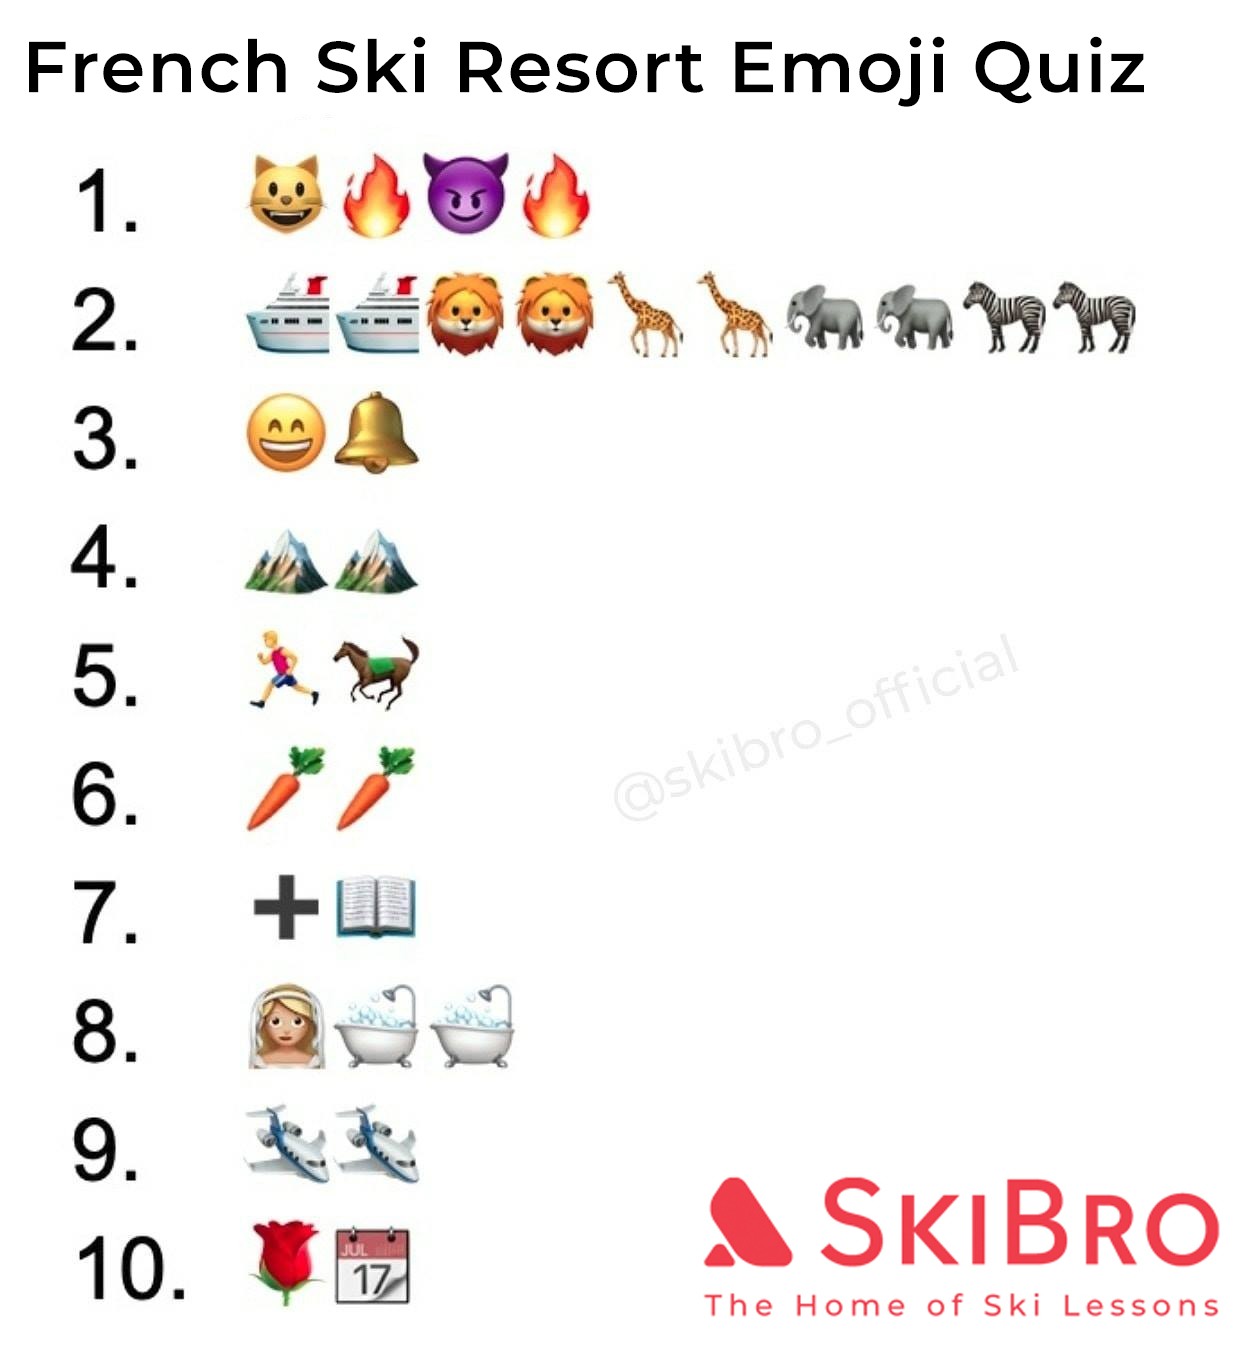 emoji quiz of 10 popular french ski resorts